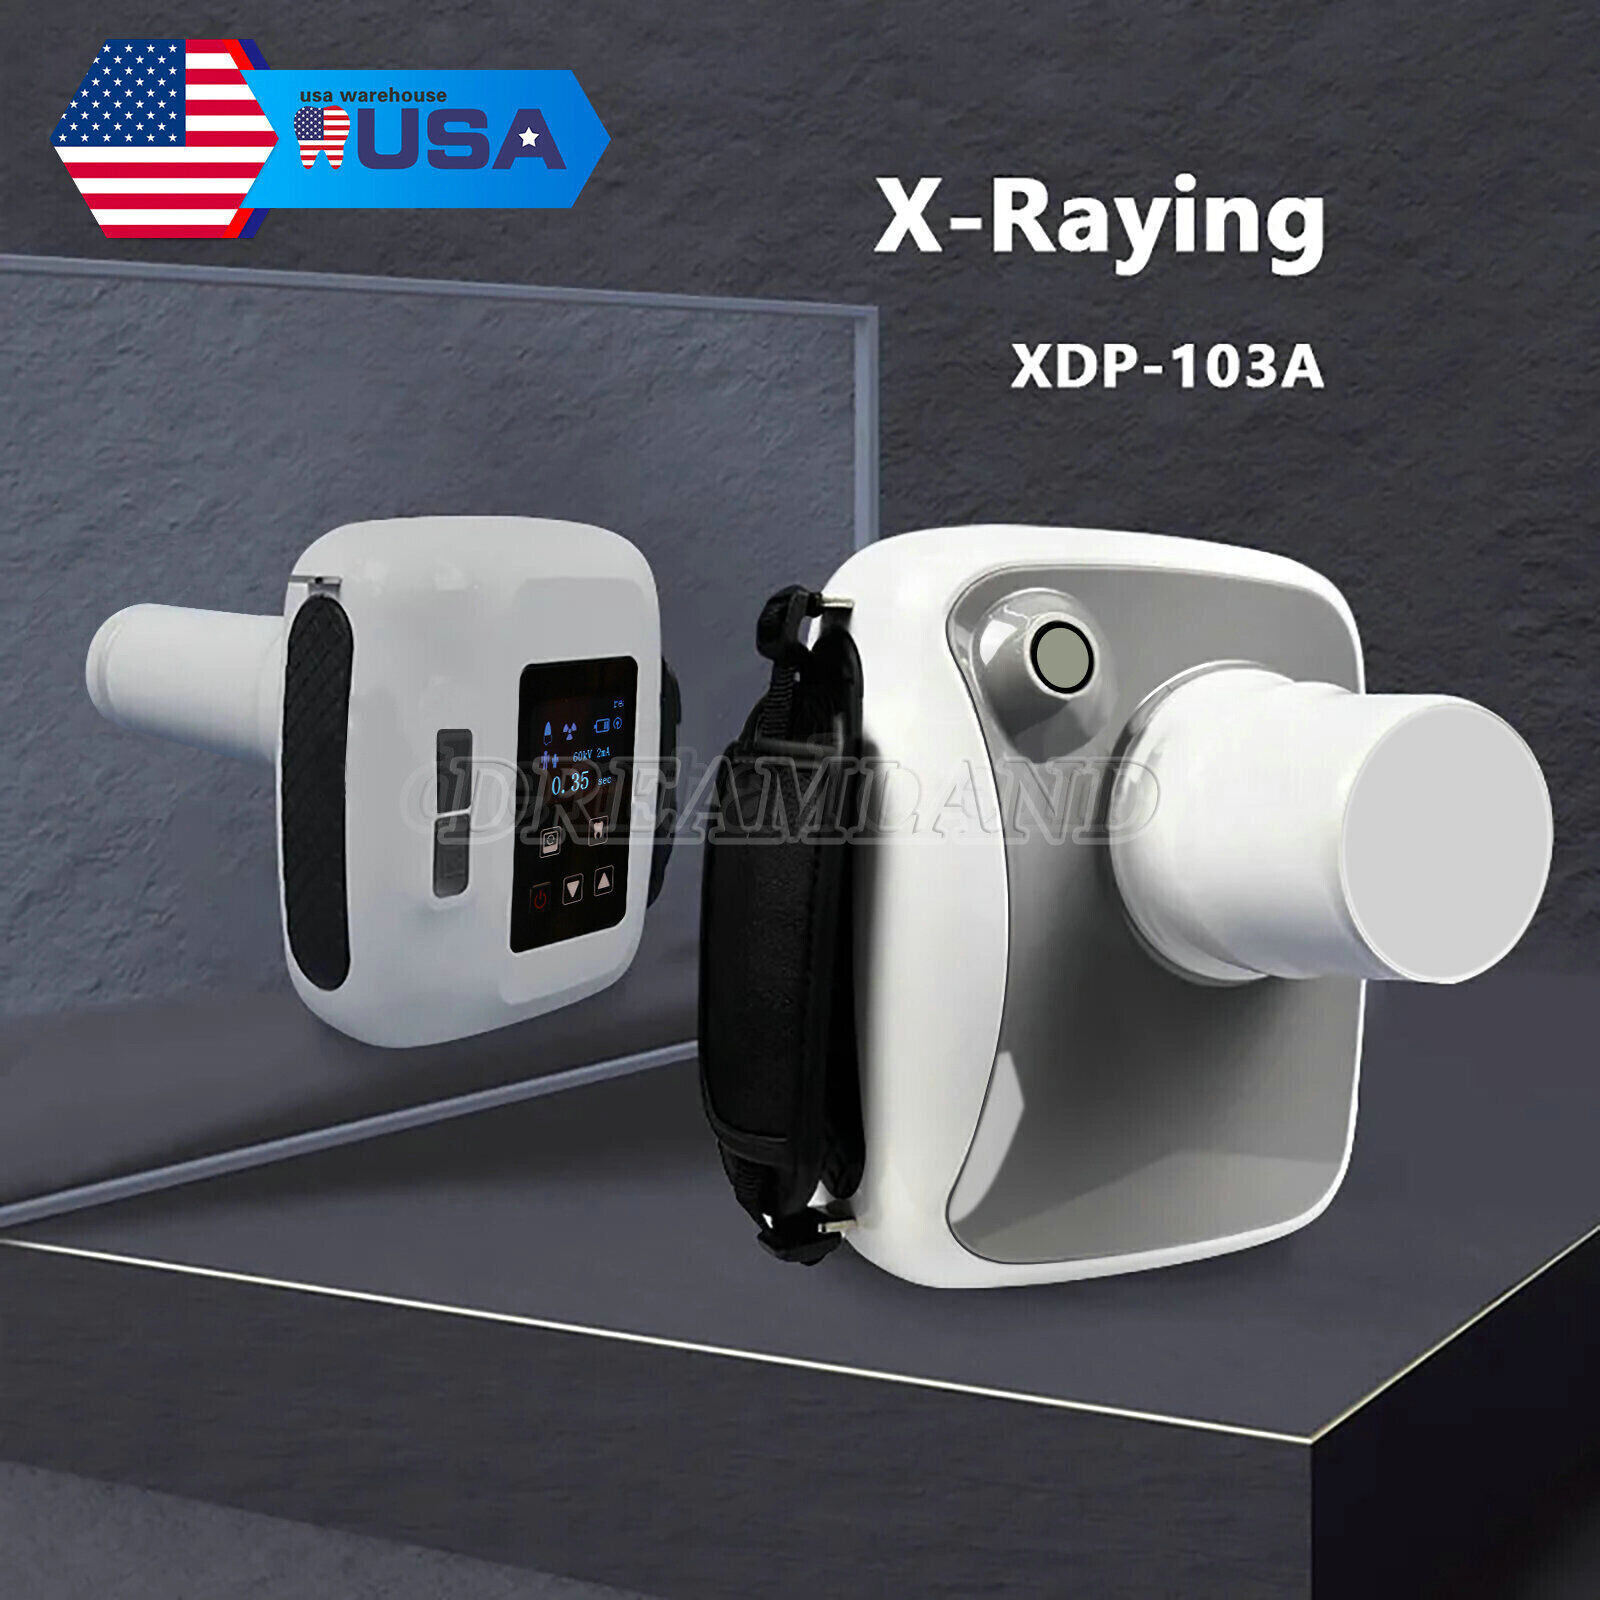 Equipo de rayos X dental Máquina de rayos X de imagen digital X ray Machine Unbranded Does Not Apply - фотография #17